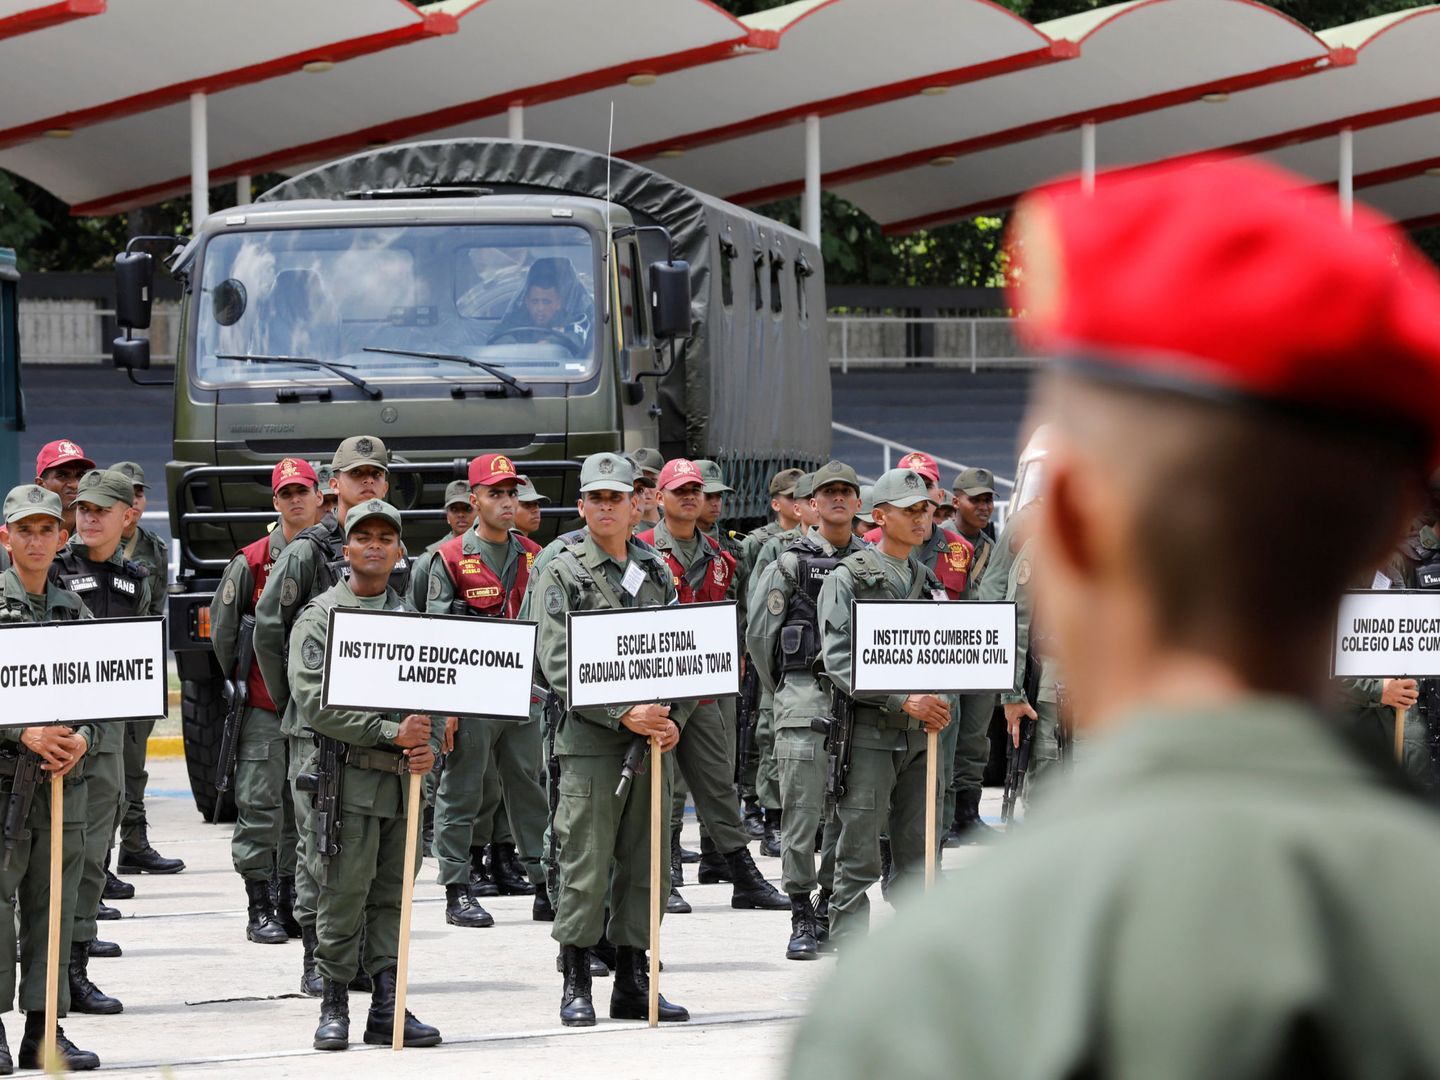 Soldados en formación durante un acto organizativo de cara a los comicios, en Fuerte Tiuna, Caracas, el 15 de mayo de 2018. (R)